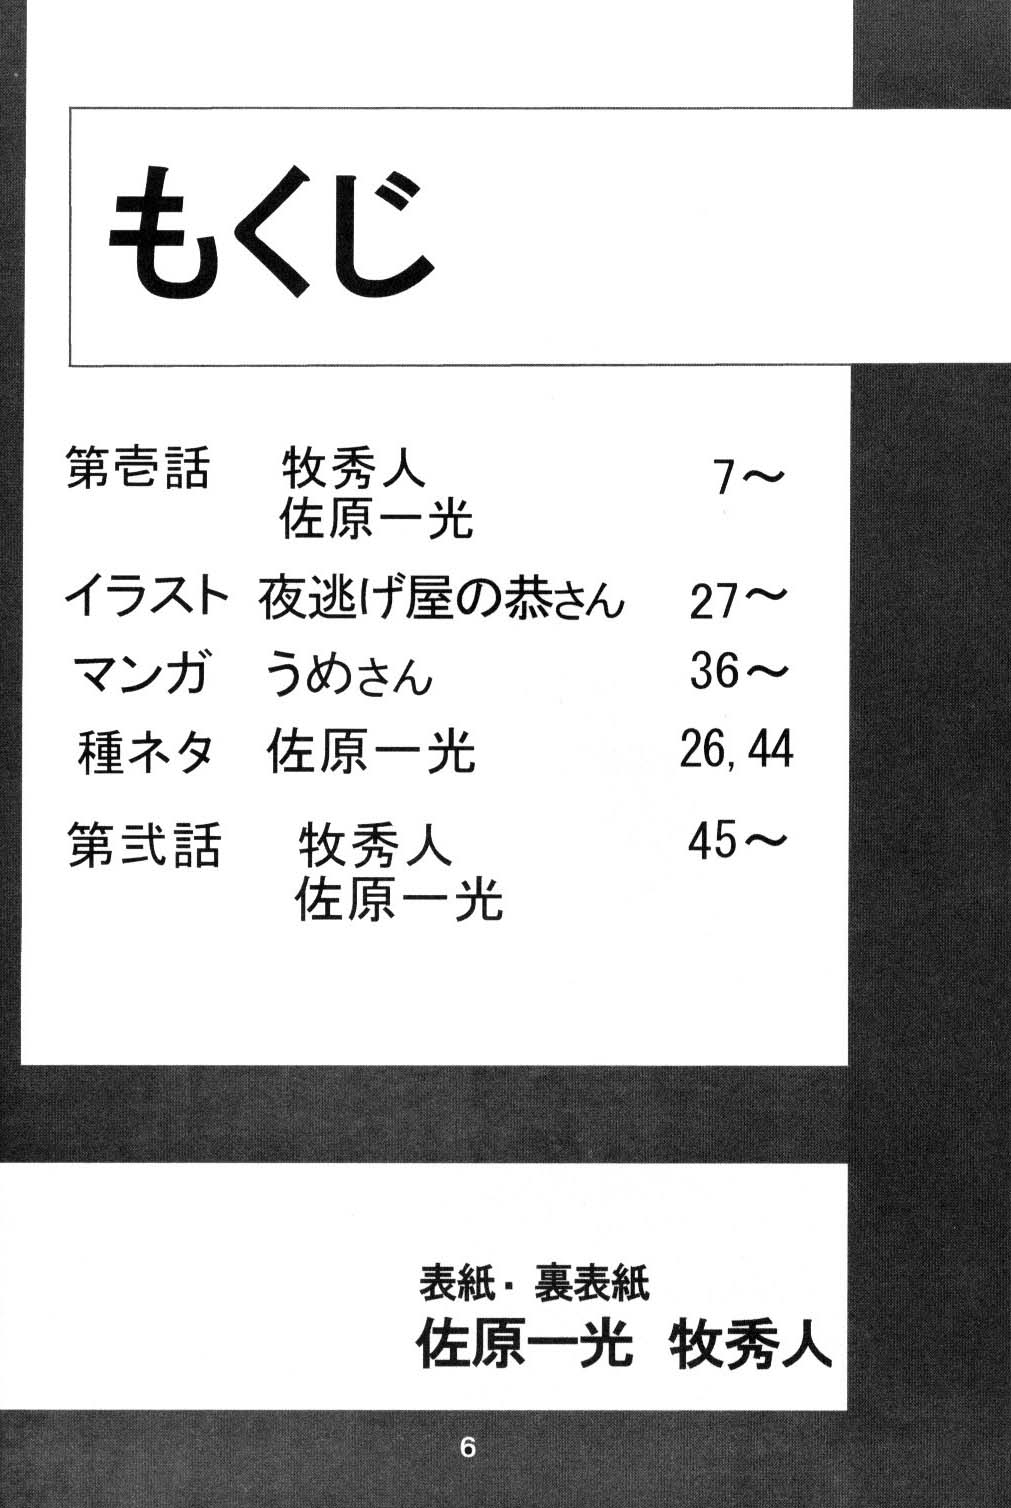 [Thirty Saver Street 2D Shooting (Maki Hideto, Sawara Kazumitsu, Yonige-ya No Kyou)] Second Uchuu Keikaku (Neon Genesis Evangelion) page 5 full